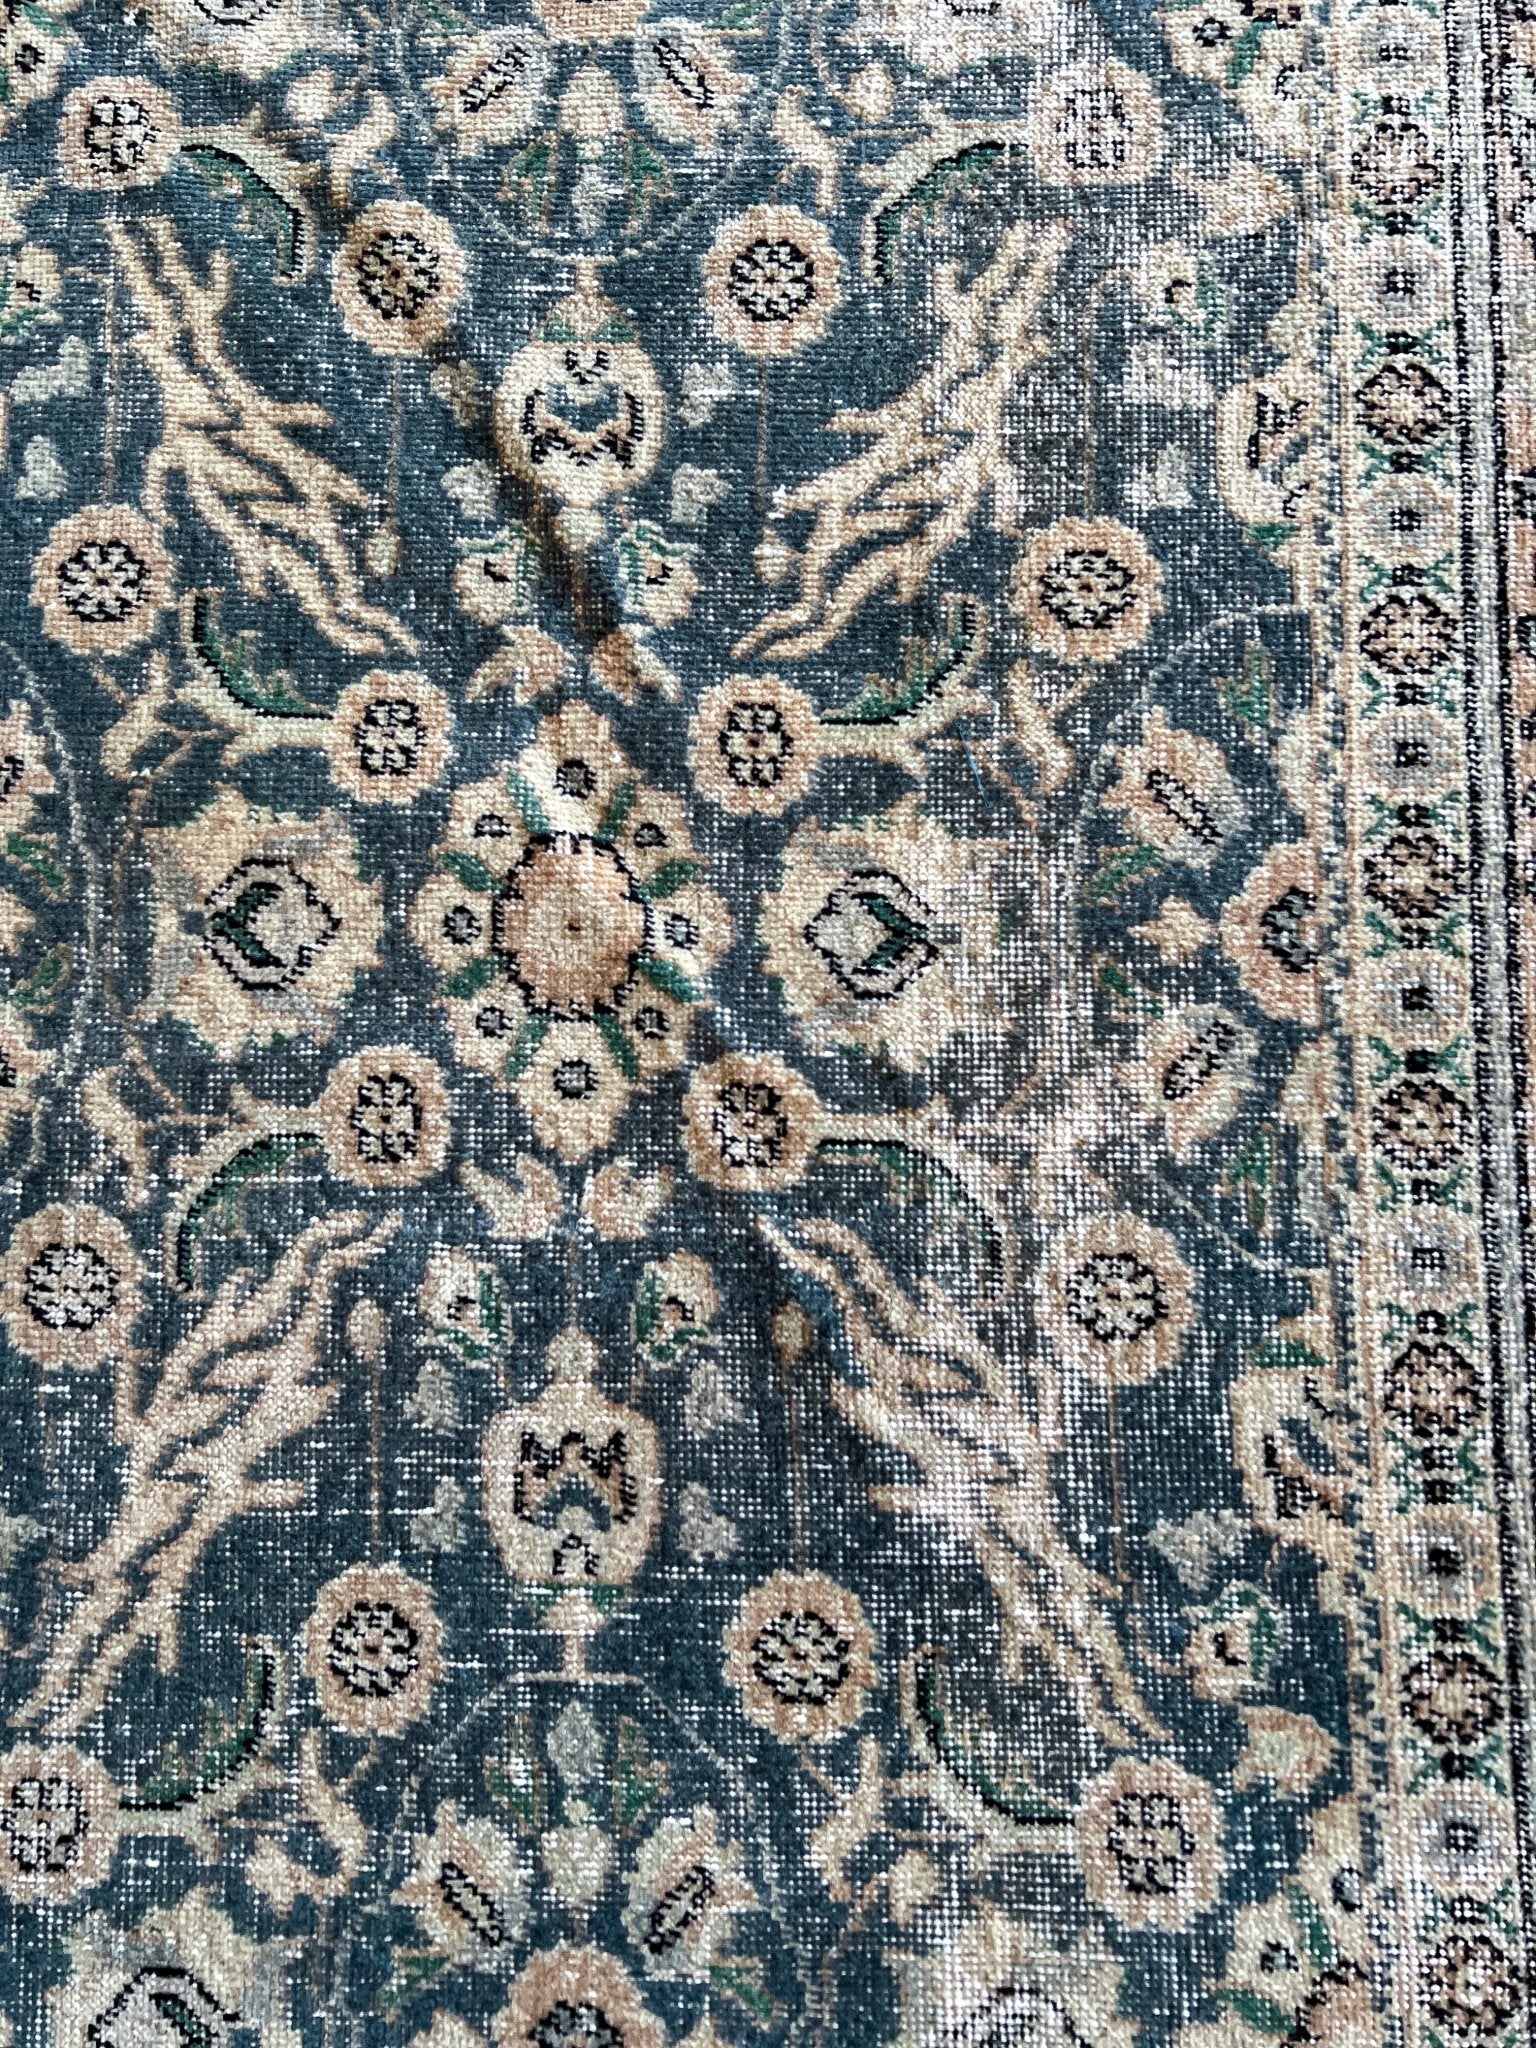 vintage turkish rug shop san francisco bay area. Oriental rug shop palo alto berkeley. Buy rugs online toronto canada